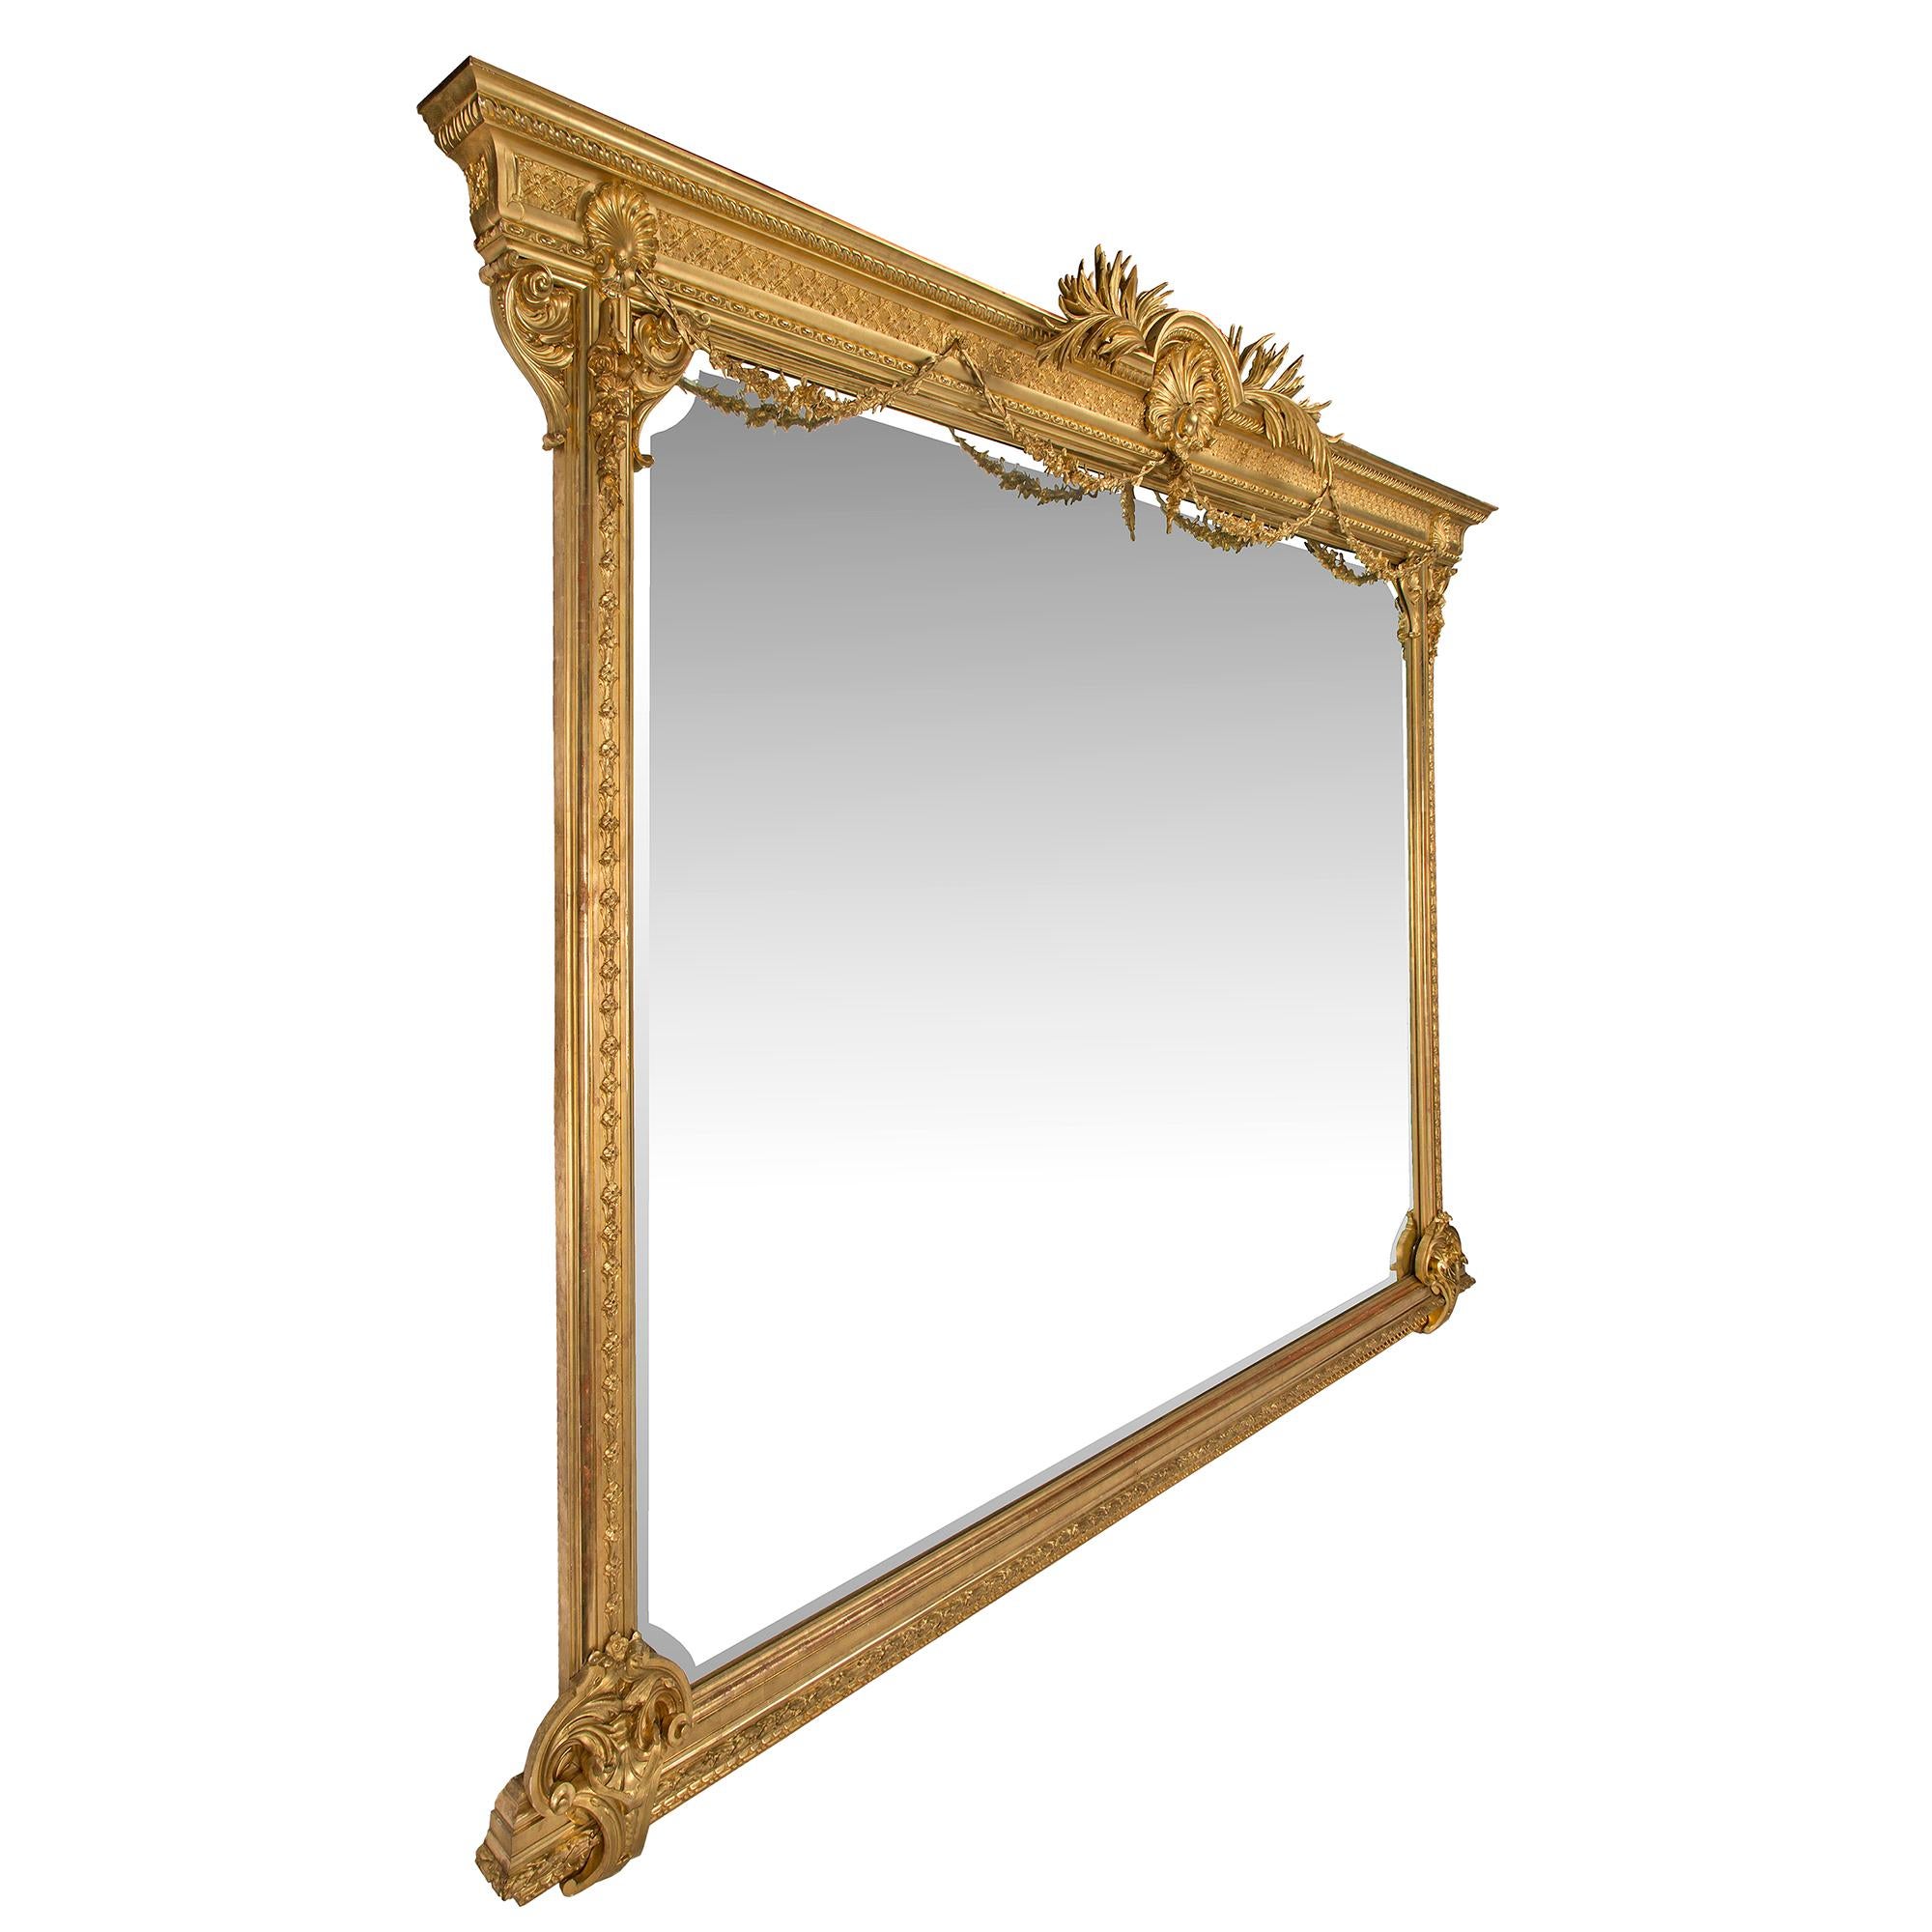 Une paire monumentale et extrêmement rare de miroirs italiens en bois doré de style Louis XVI du XIXe siècle. Les miroirs biseautés reposent sur une base droite finement sculptée, accentuée de volutes et de feuilles d'acanthe de chaque côté. Les